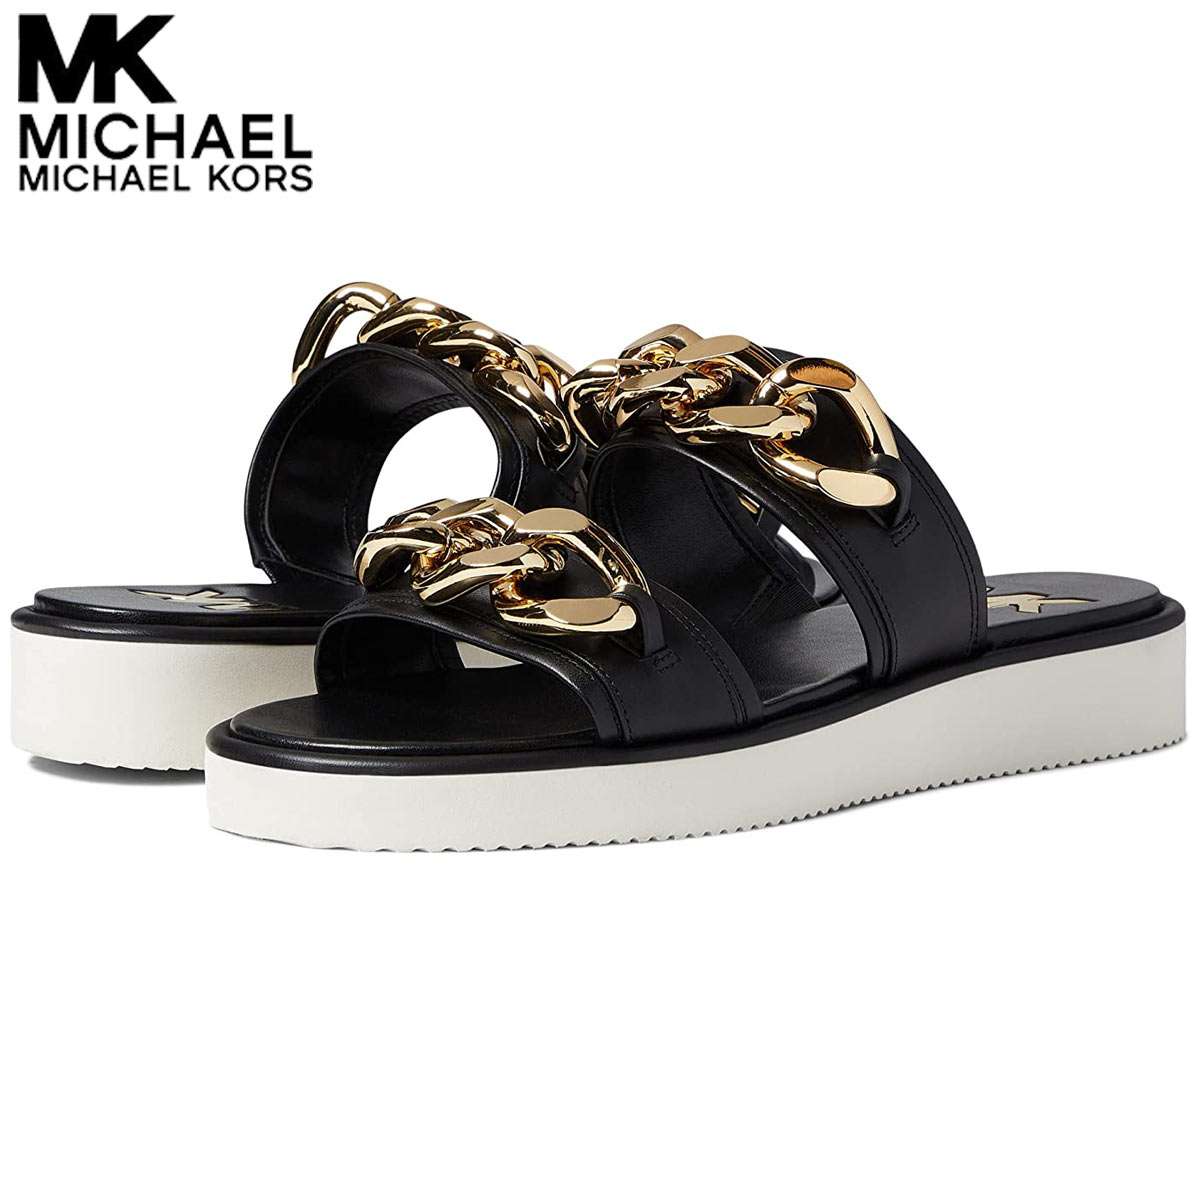 マイケル コース マイケルコース レディース サンダル 厚底 スポーツ 歩きやすい ブランド 靴 大きいサイズあり Michael Kors